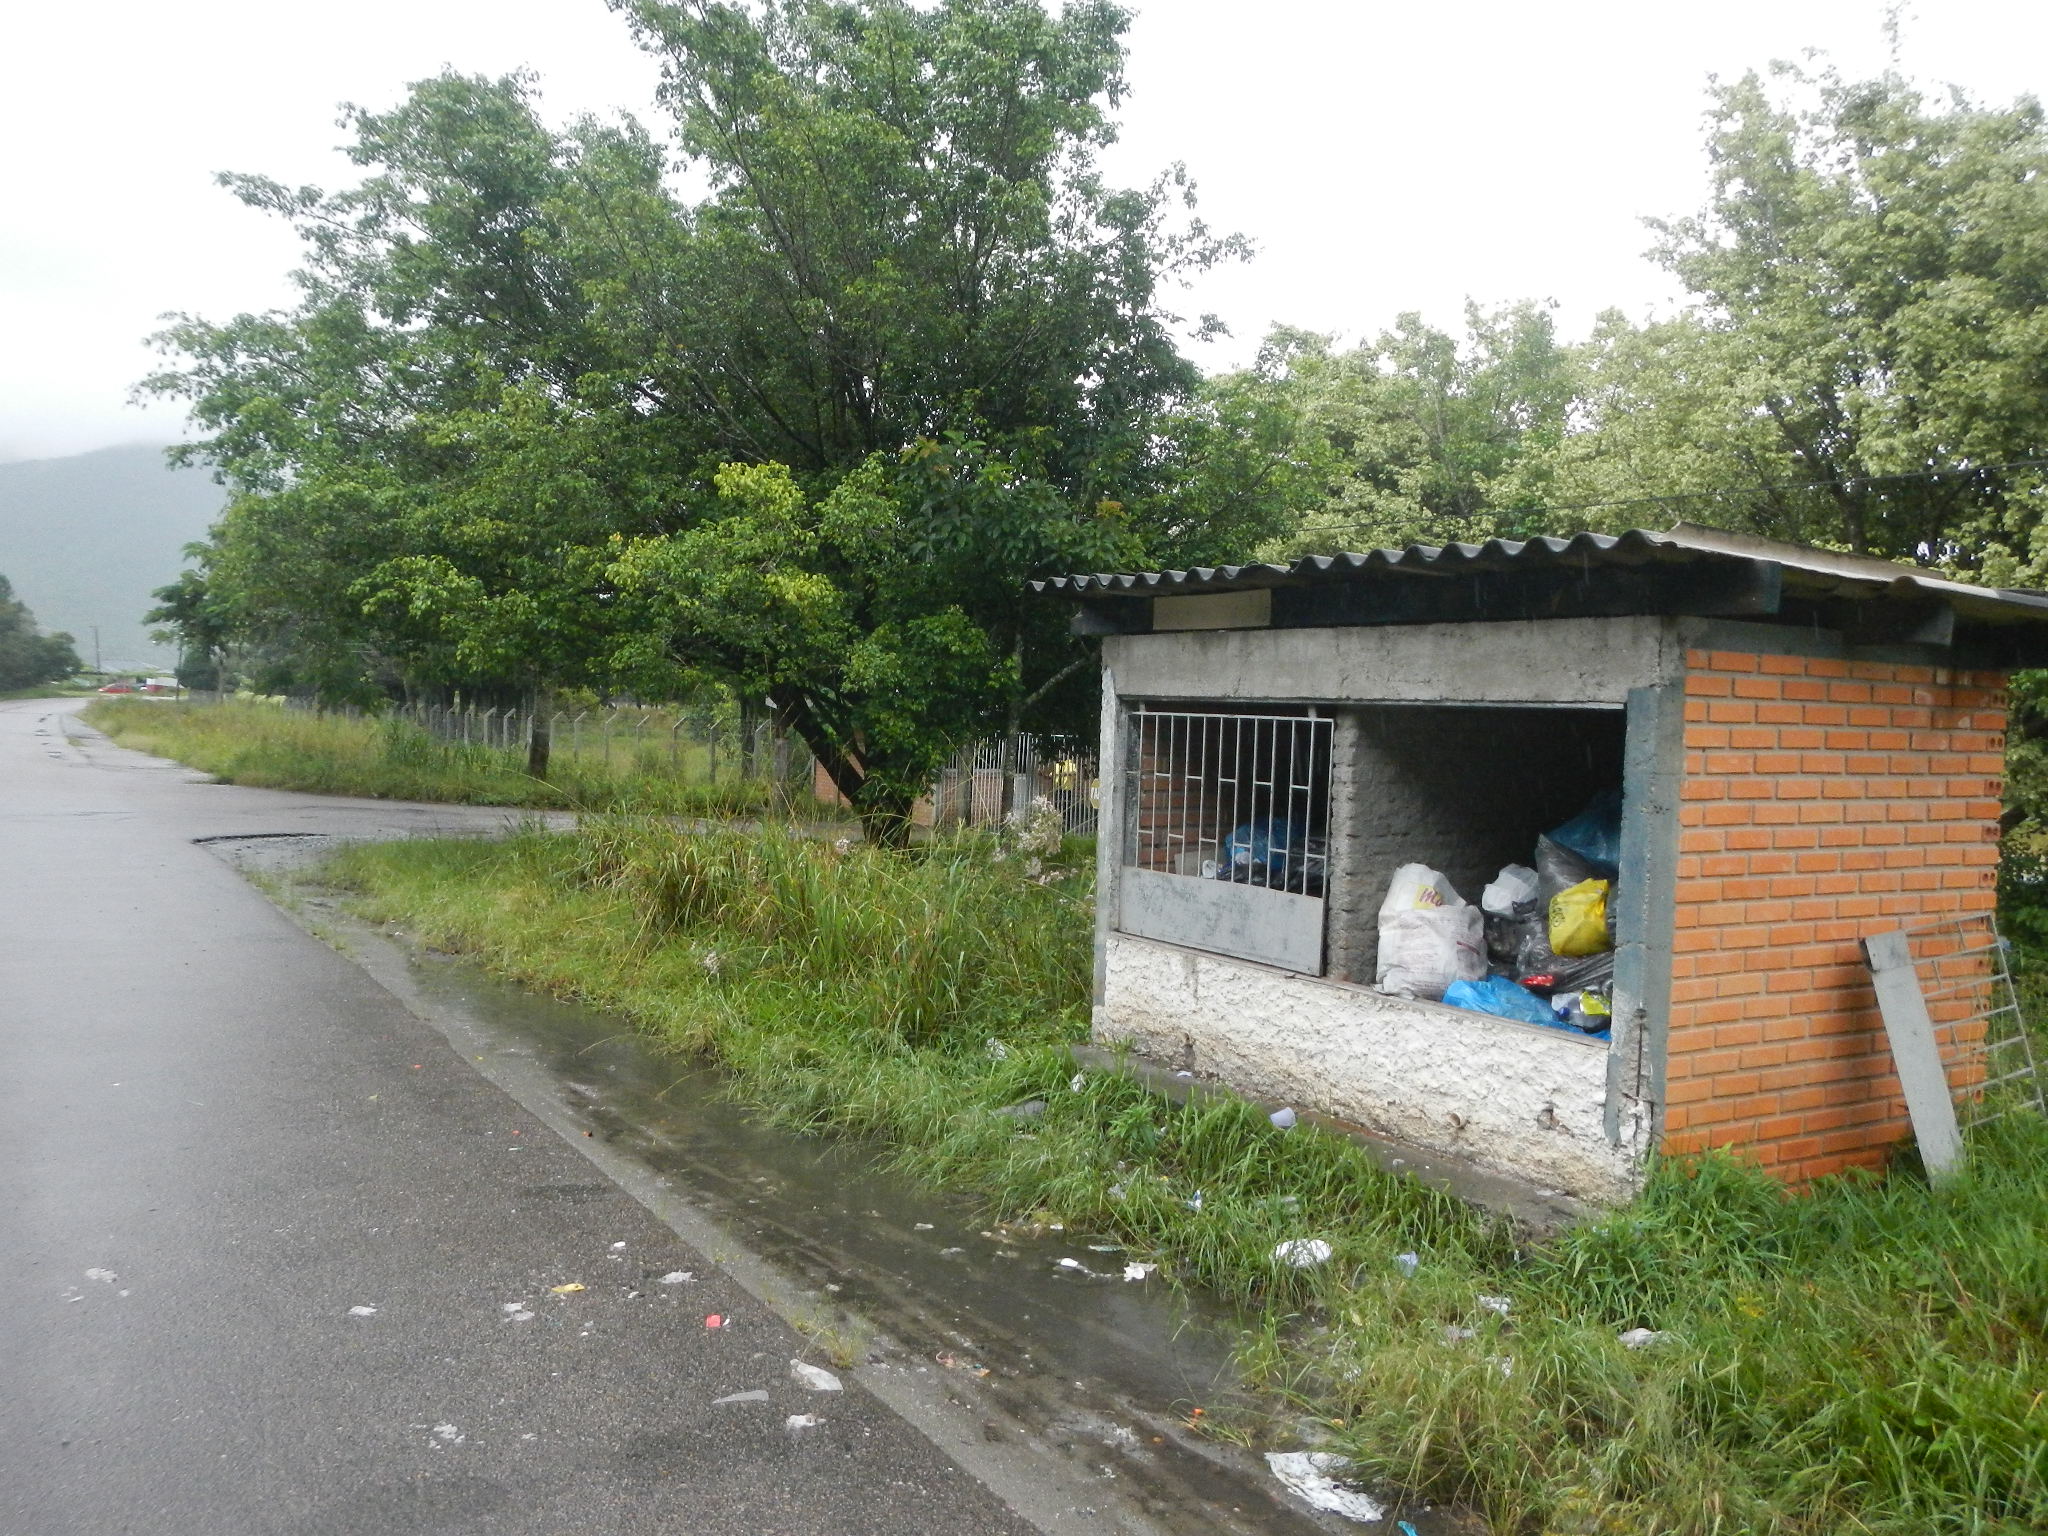 20150330 Fazenda Obras Estudo local abrigo contentores lixo 006.jpg